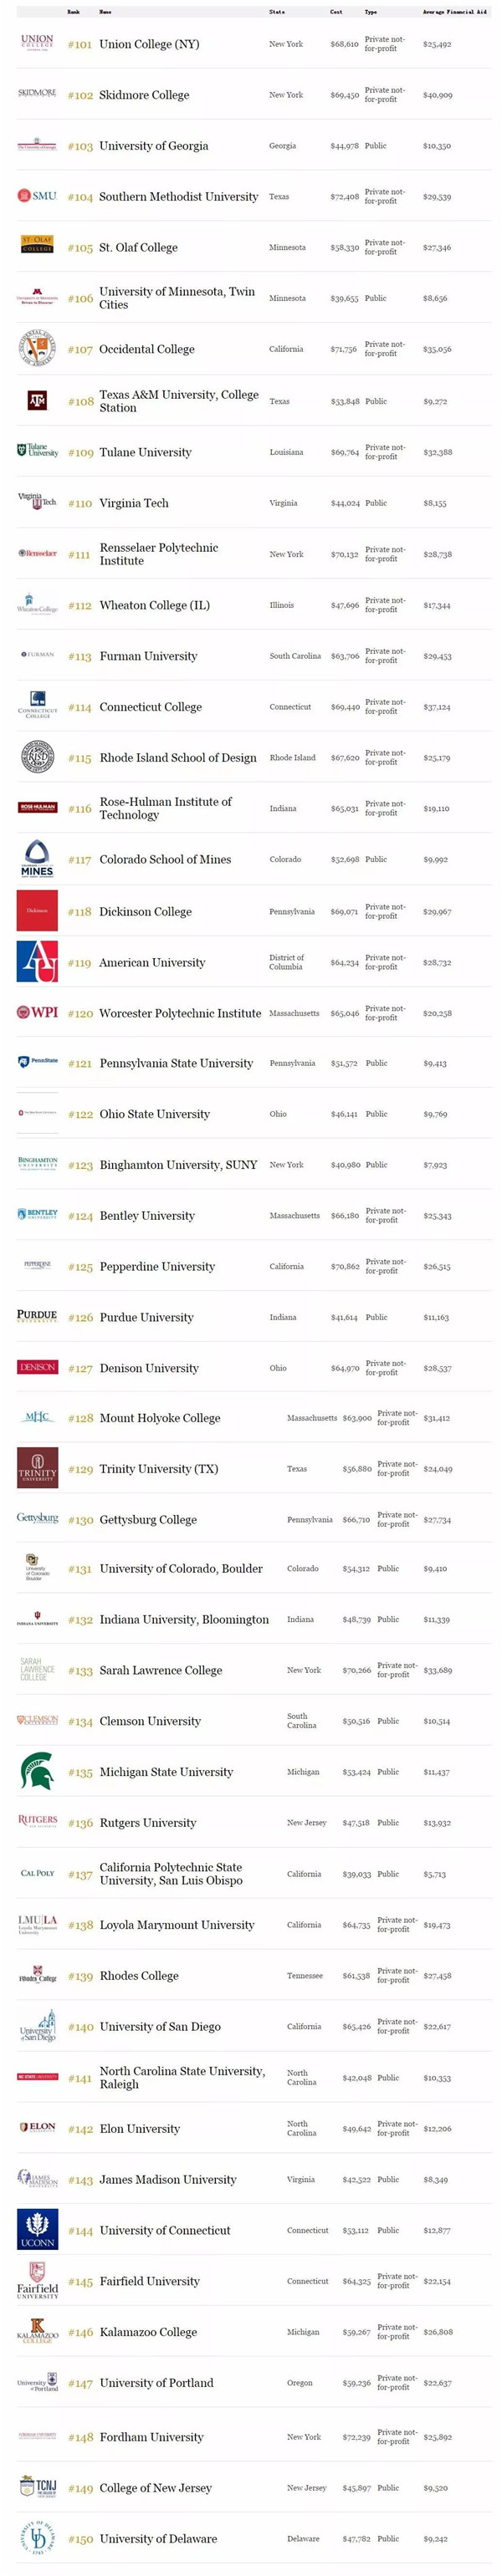 福布斯2018年全美最佳大学排名出炉(TOP150)